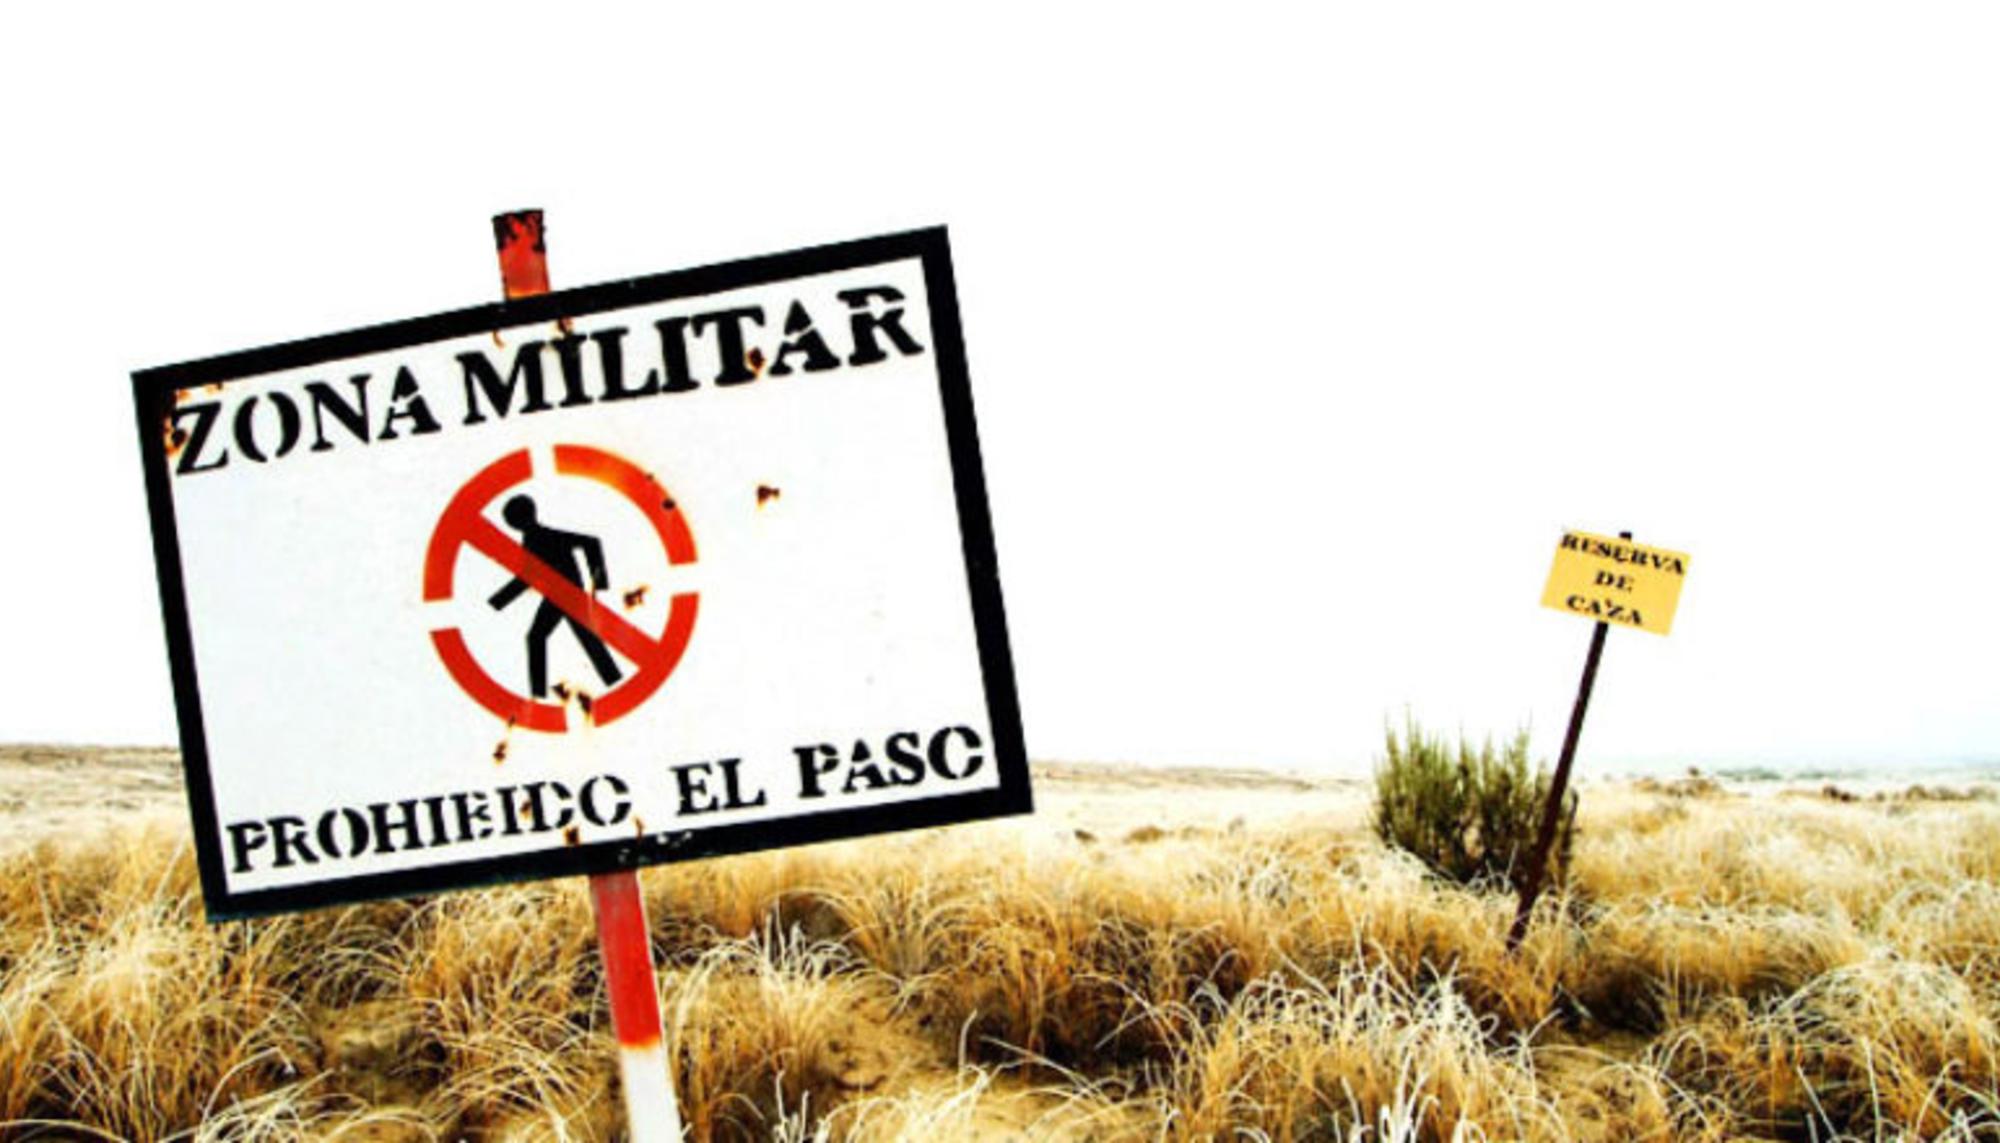 Zona militar: prohibido el paso